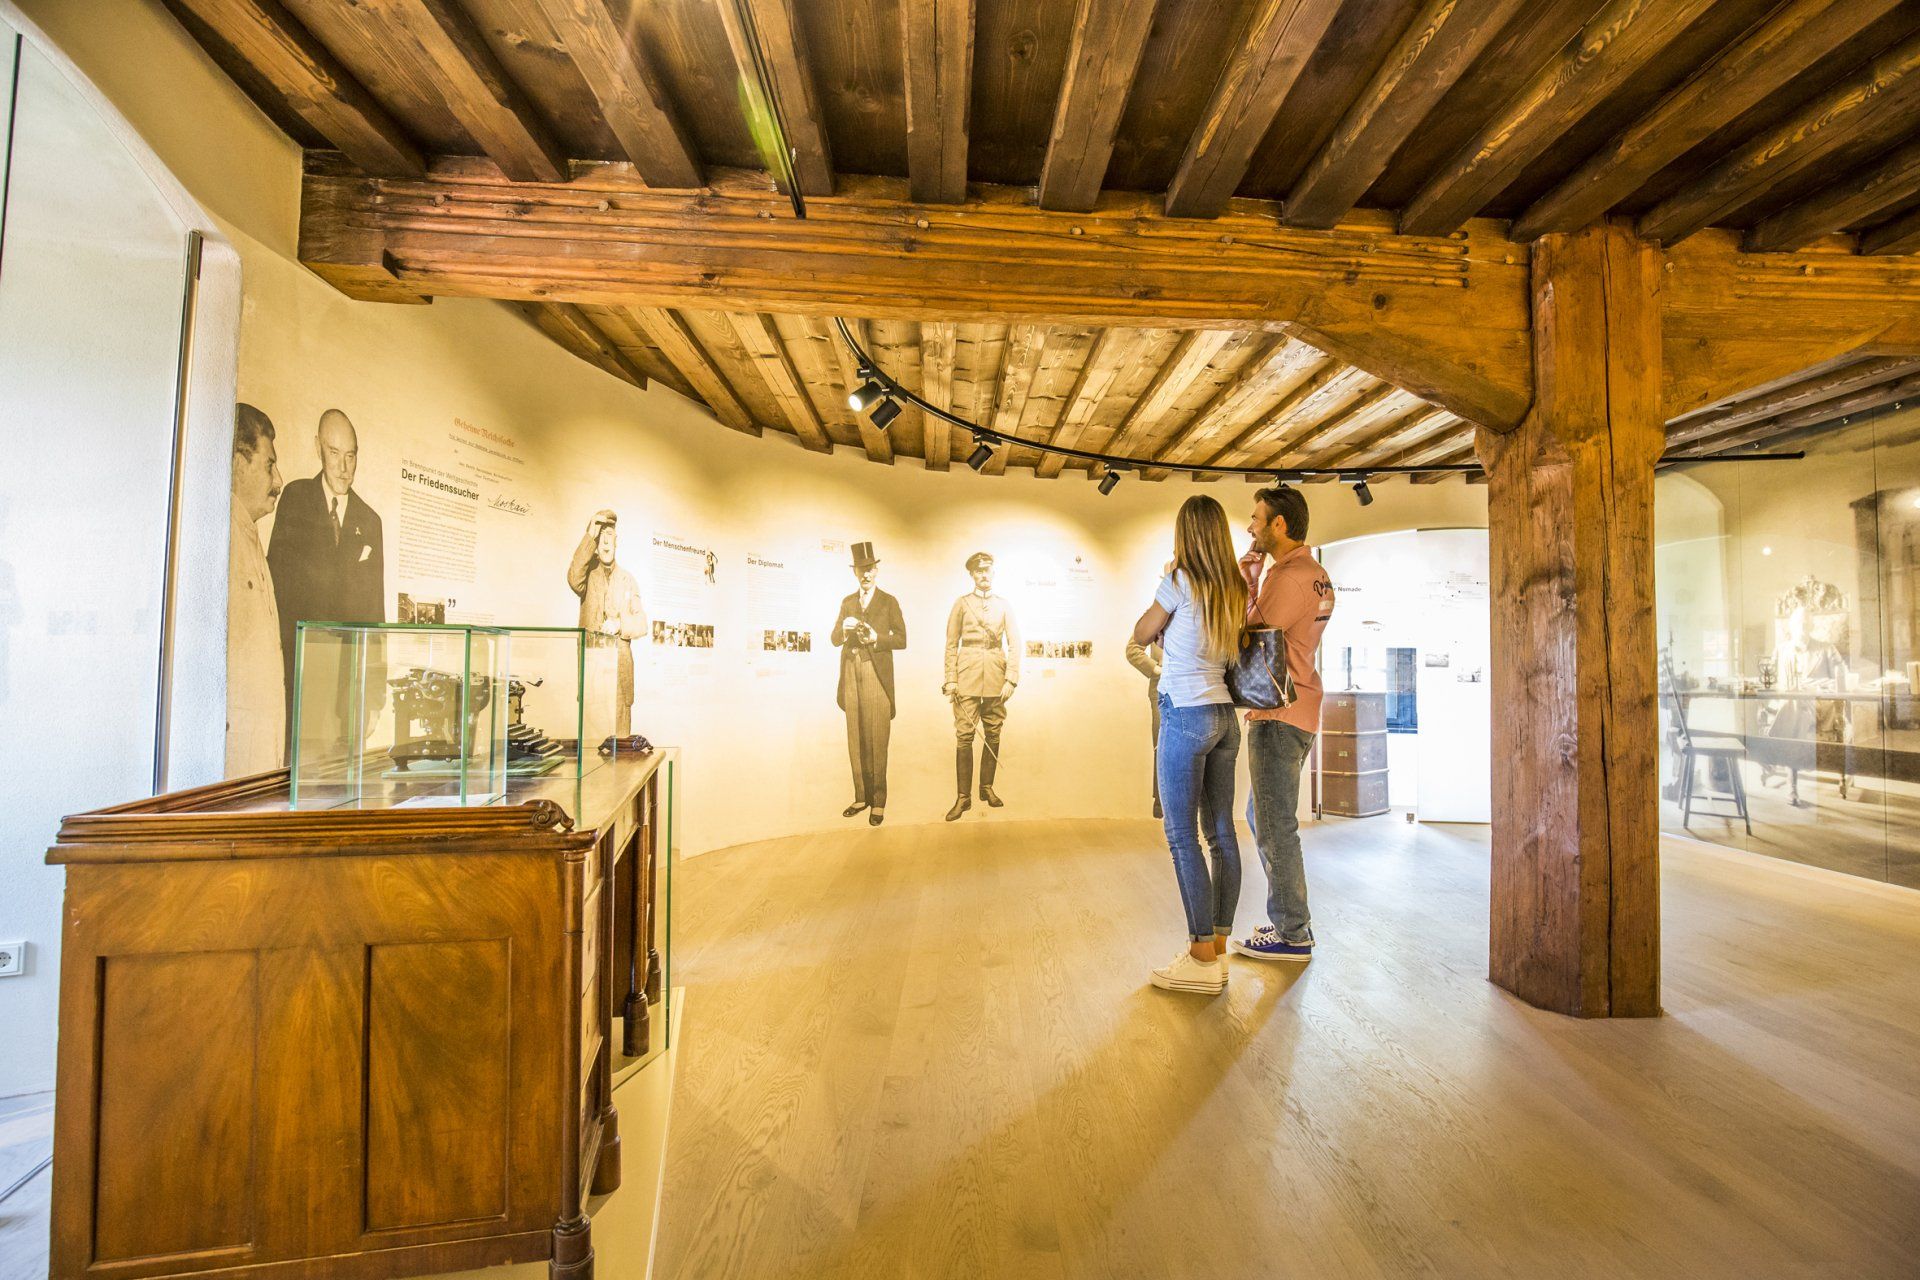 Das Museum der Burg Falkenberg liegt im Landkreis Tirschenreuth im Steinwald. Es thematisiert das Leben des ehemaligen Burgherrn Friedrich Wernern Graf von der Schulenburg.